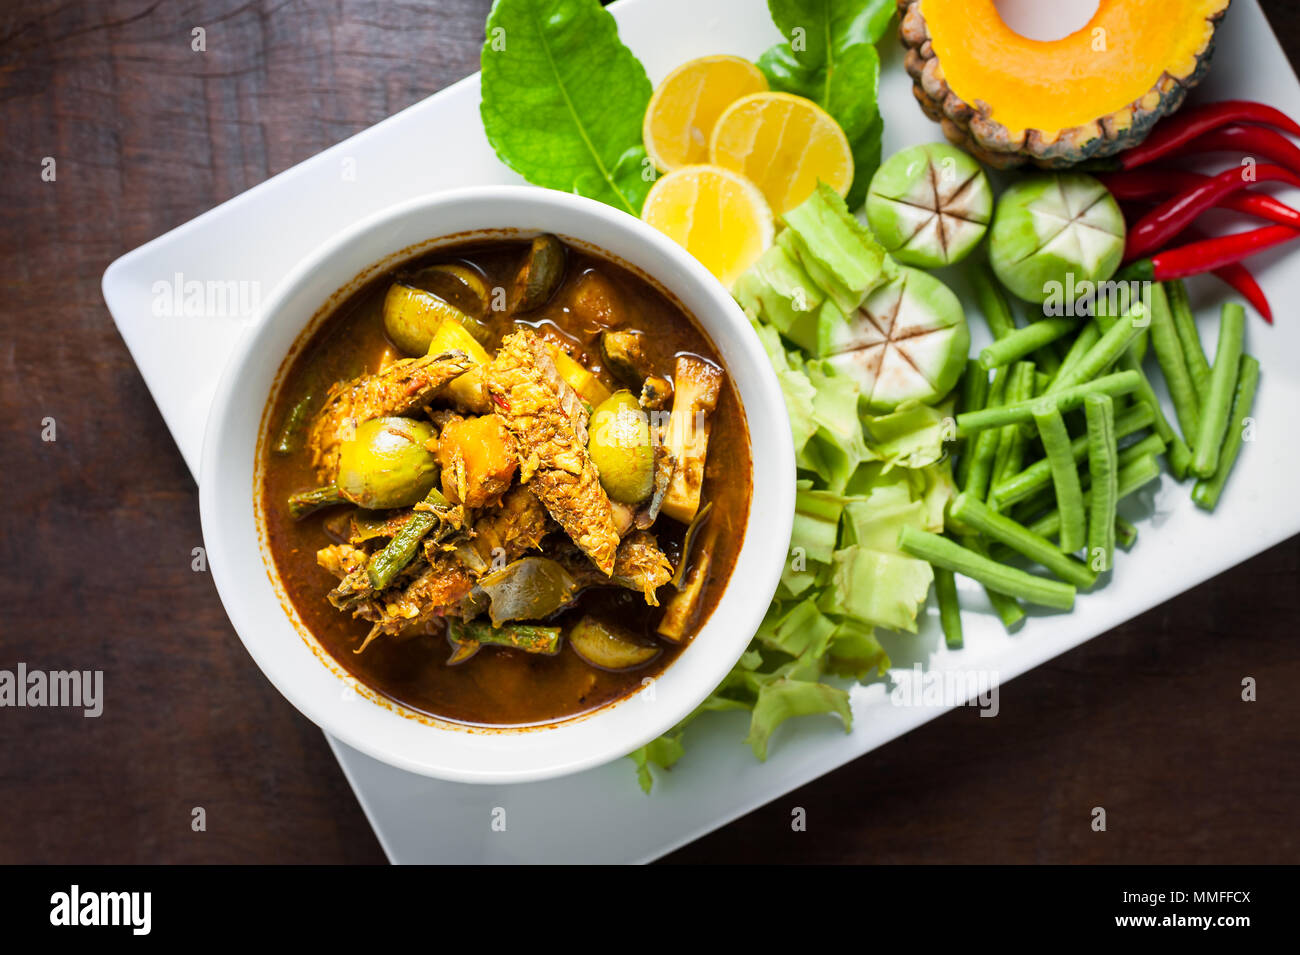 Thai Food: Die eingeweide von Makrele fisch Bauch hot spicy Curry oder Fisch  Organe saure Suppe mit Gemüse auf Holztisch, Thai Sprache ist Kang Tai Pla  Stockfotografie - Alamy